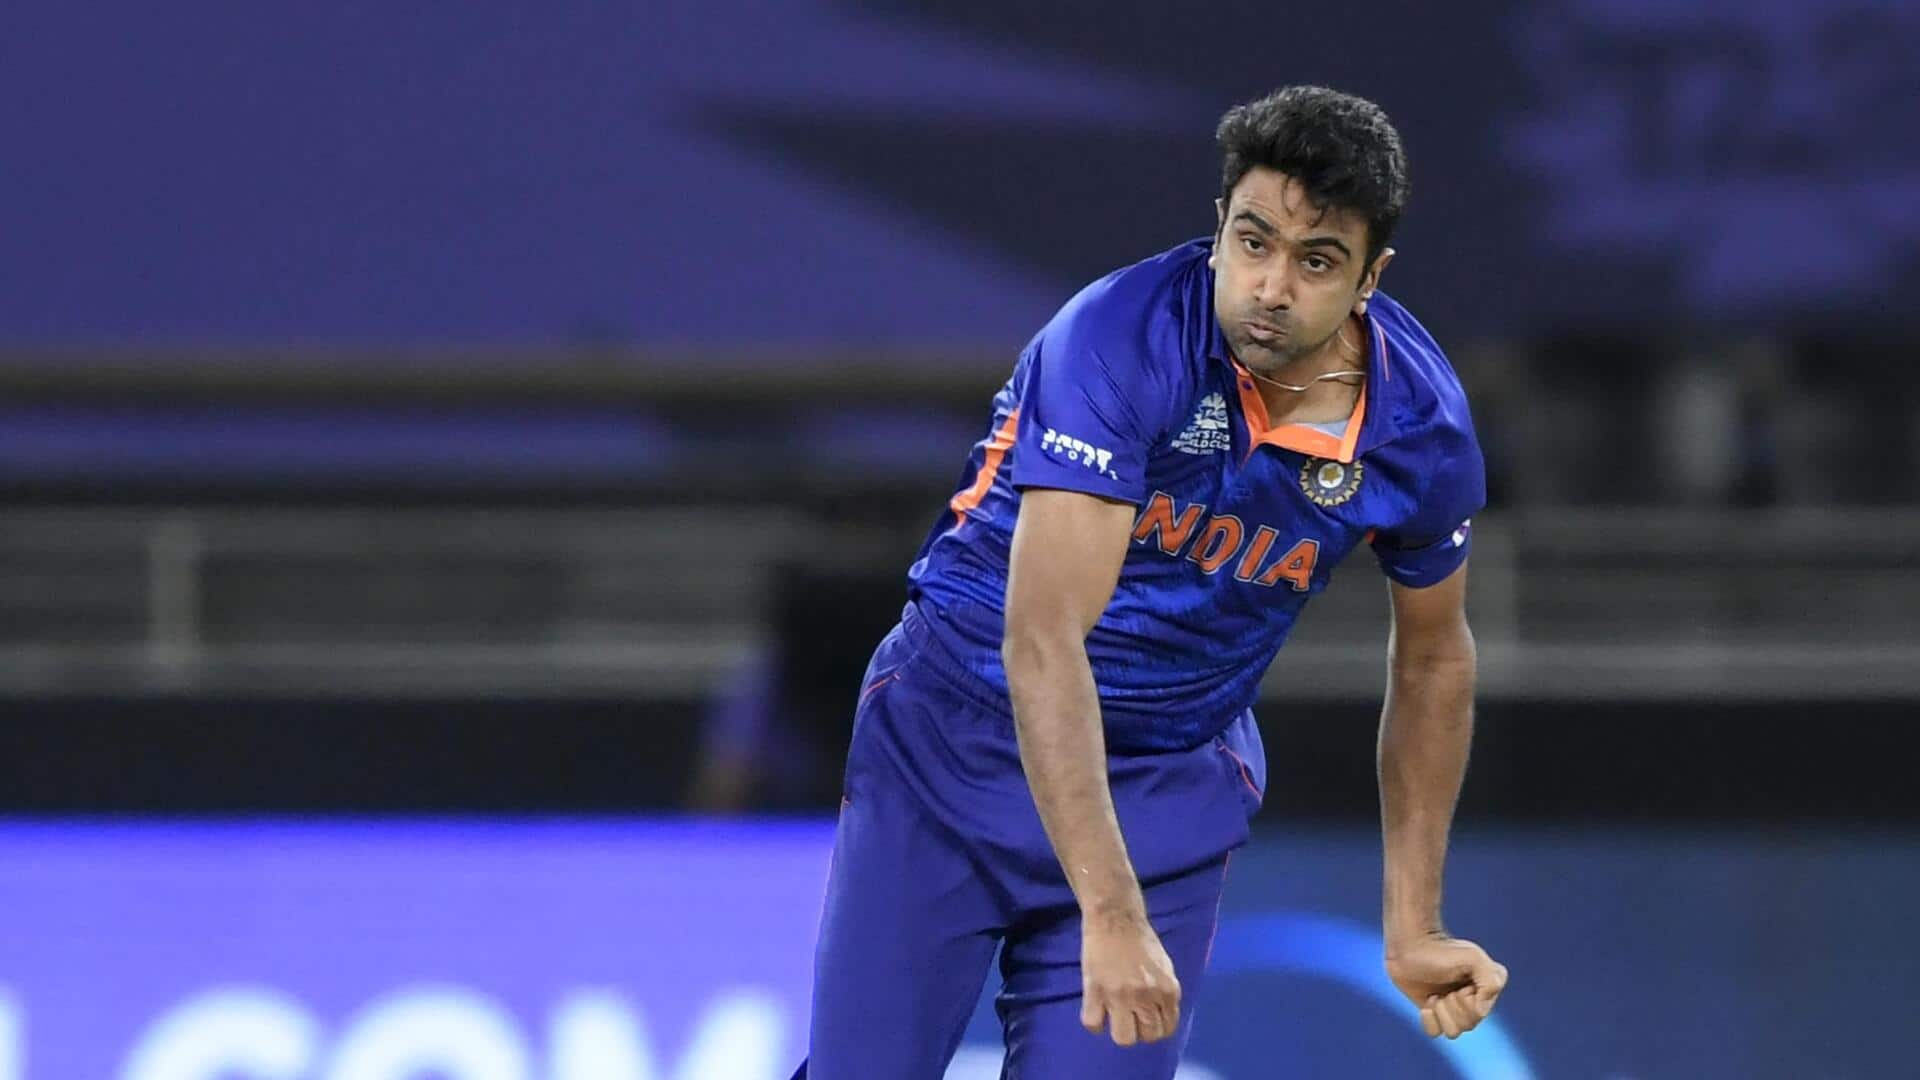 रविचंद्रन अश्विन सफेद गेंद क्रिकेट की भारतीय टीम में जगह पाने के हकदार नहीं- युवराज सिंह